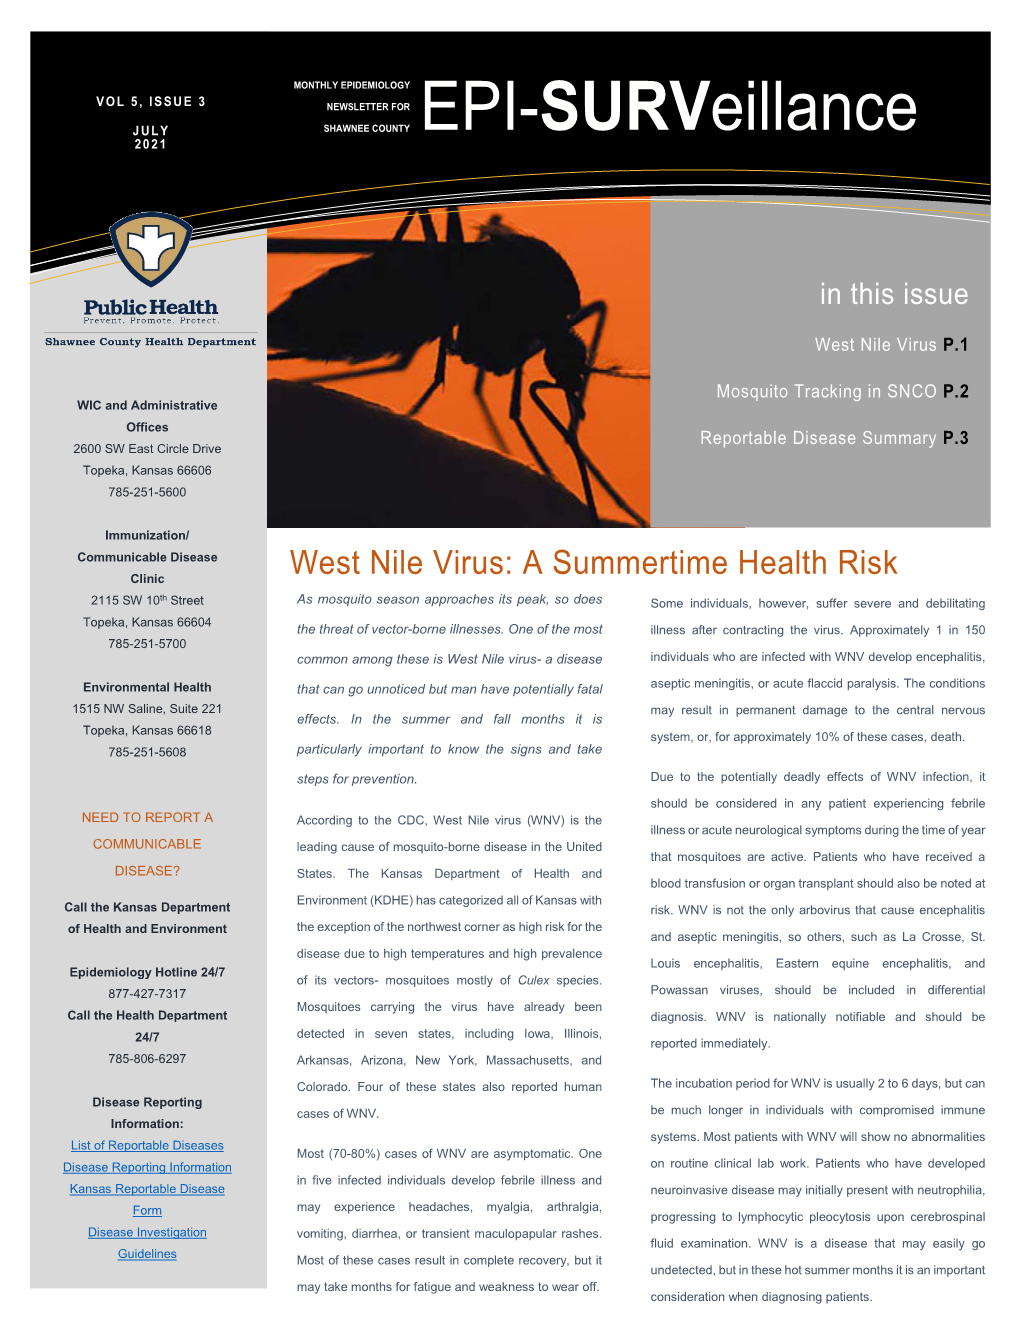 West Nile Virus: a Summertime Health Risk